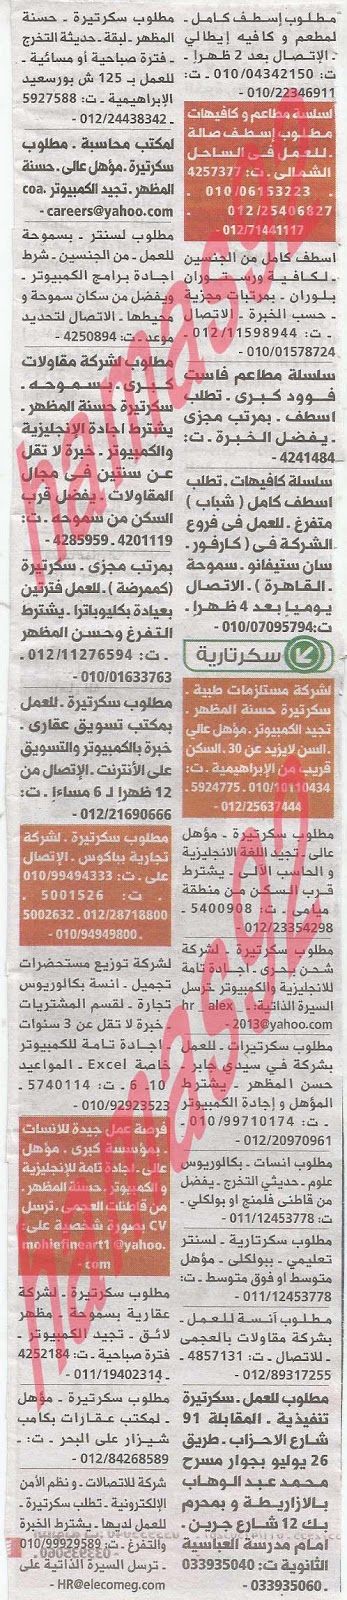 وظائف خالية من جريدة الوسيط الاسكندرية الثلاثاء 11-06-2013 %D9%88+%D8%B3+%D8%B3+2